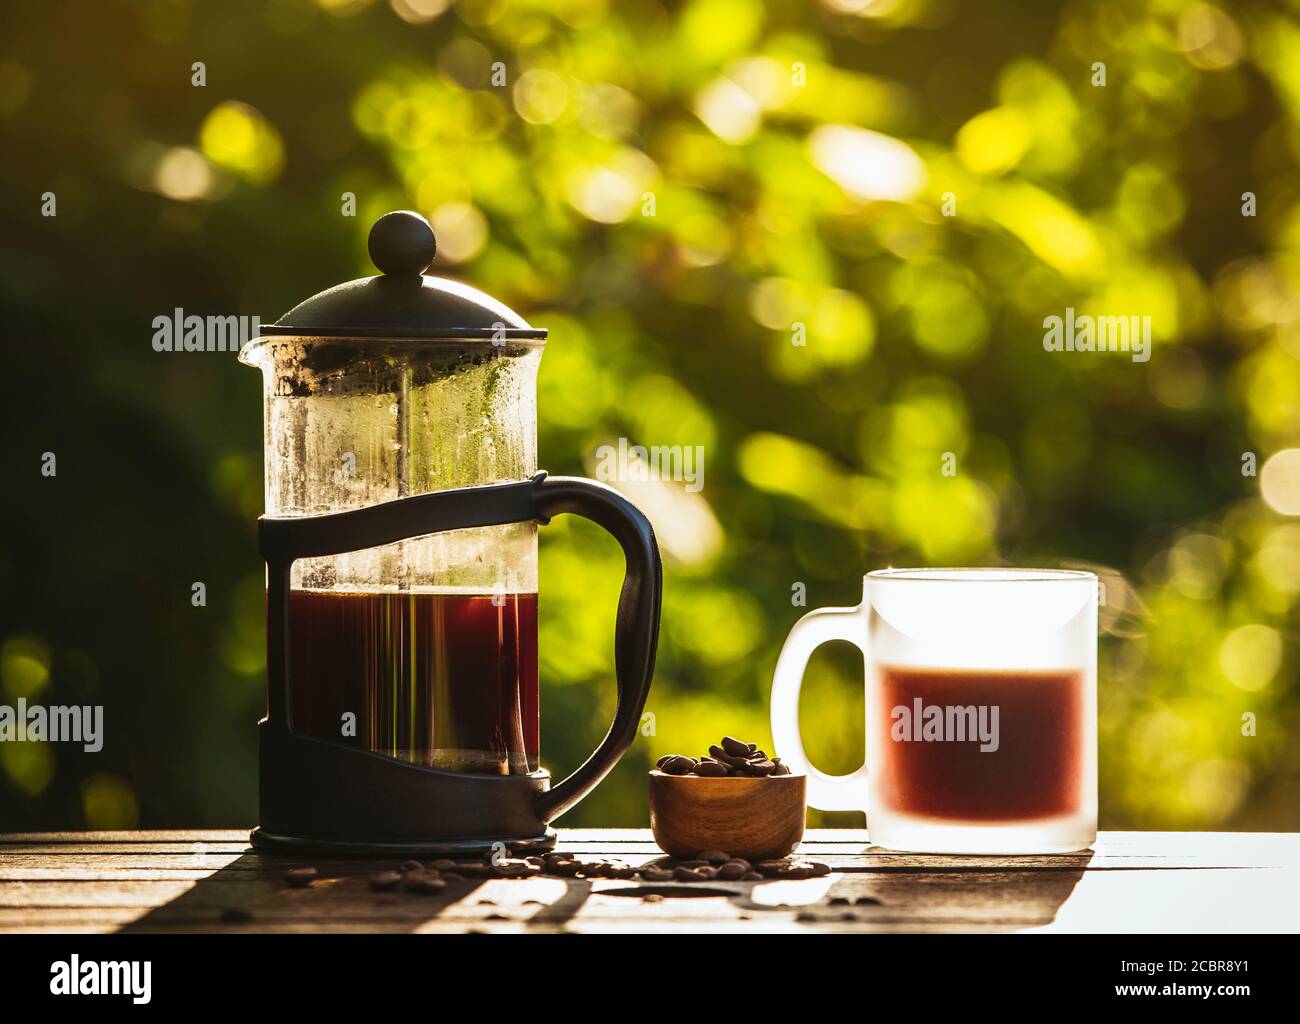 Französische Presse Kaffee und Tasse auf dem Tisch mit verstreuten Kaffeebohnen im Garten an sonnigen hellen Morgen Tag. Grund zum Aufwecken Konzept. Bokeh grün. Stockfoto